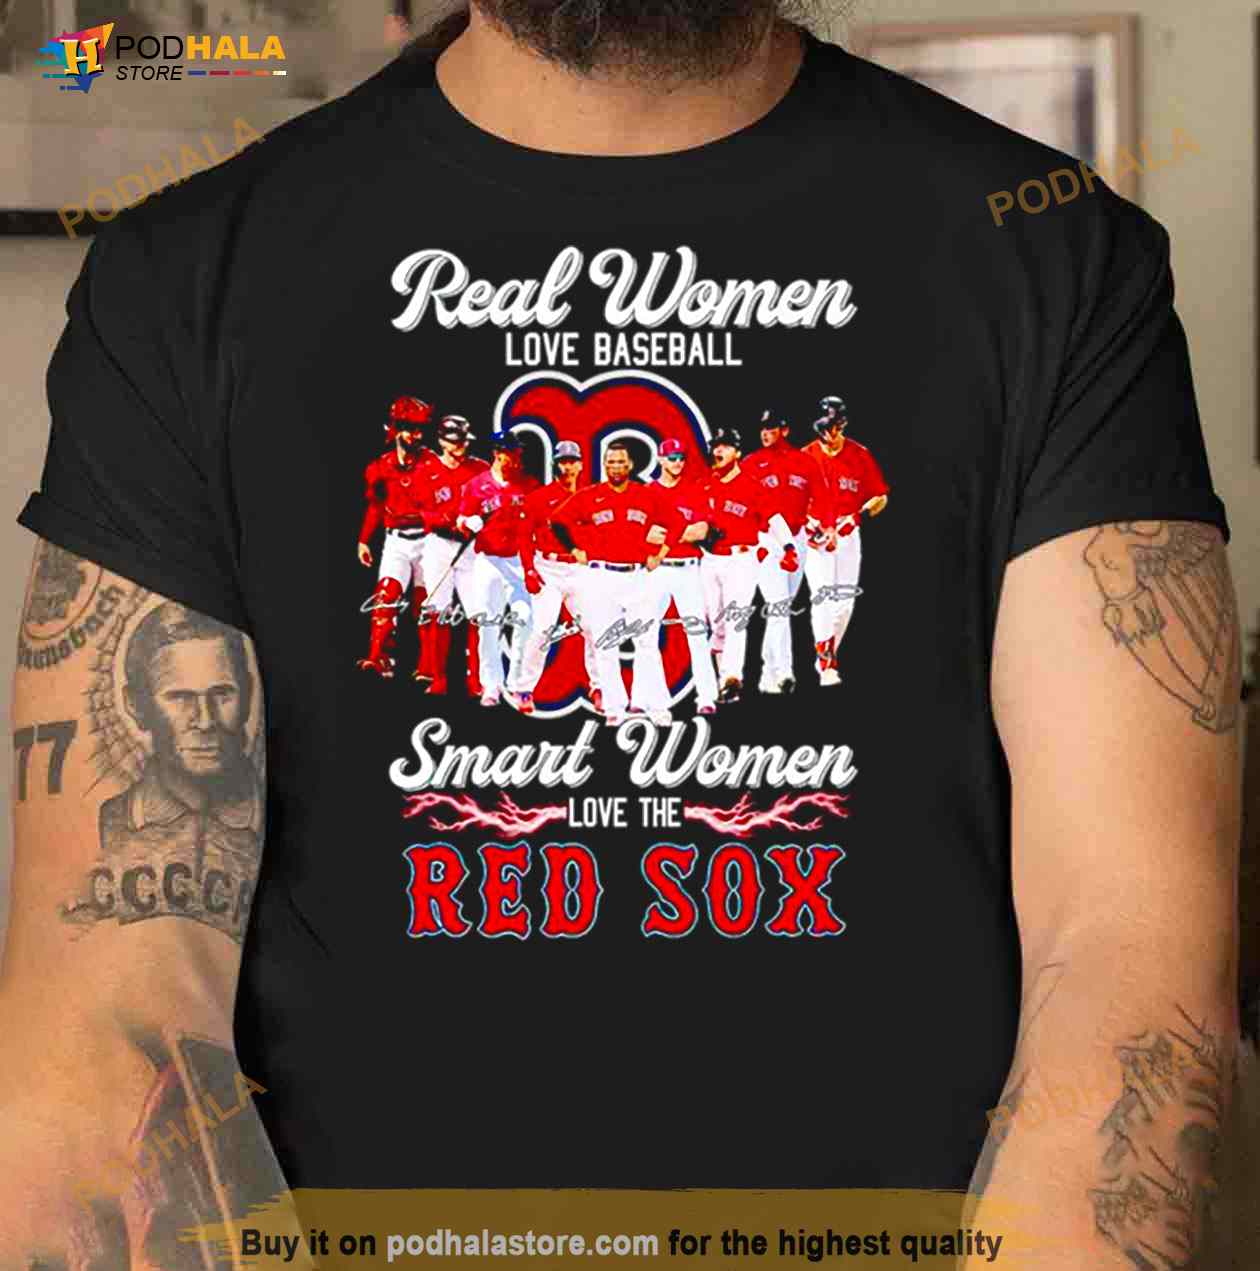 red sox shirt ideas